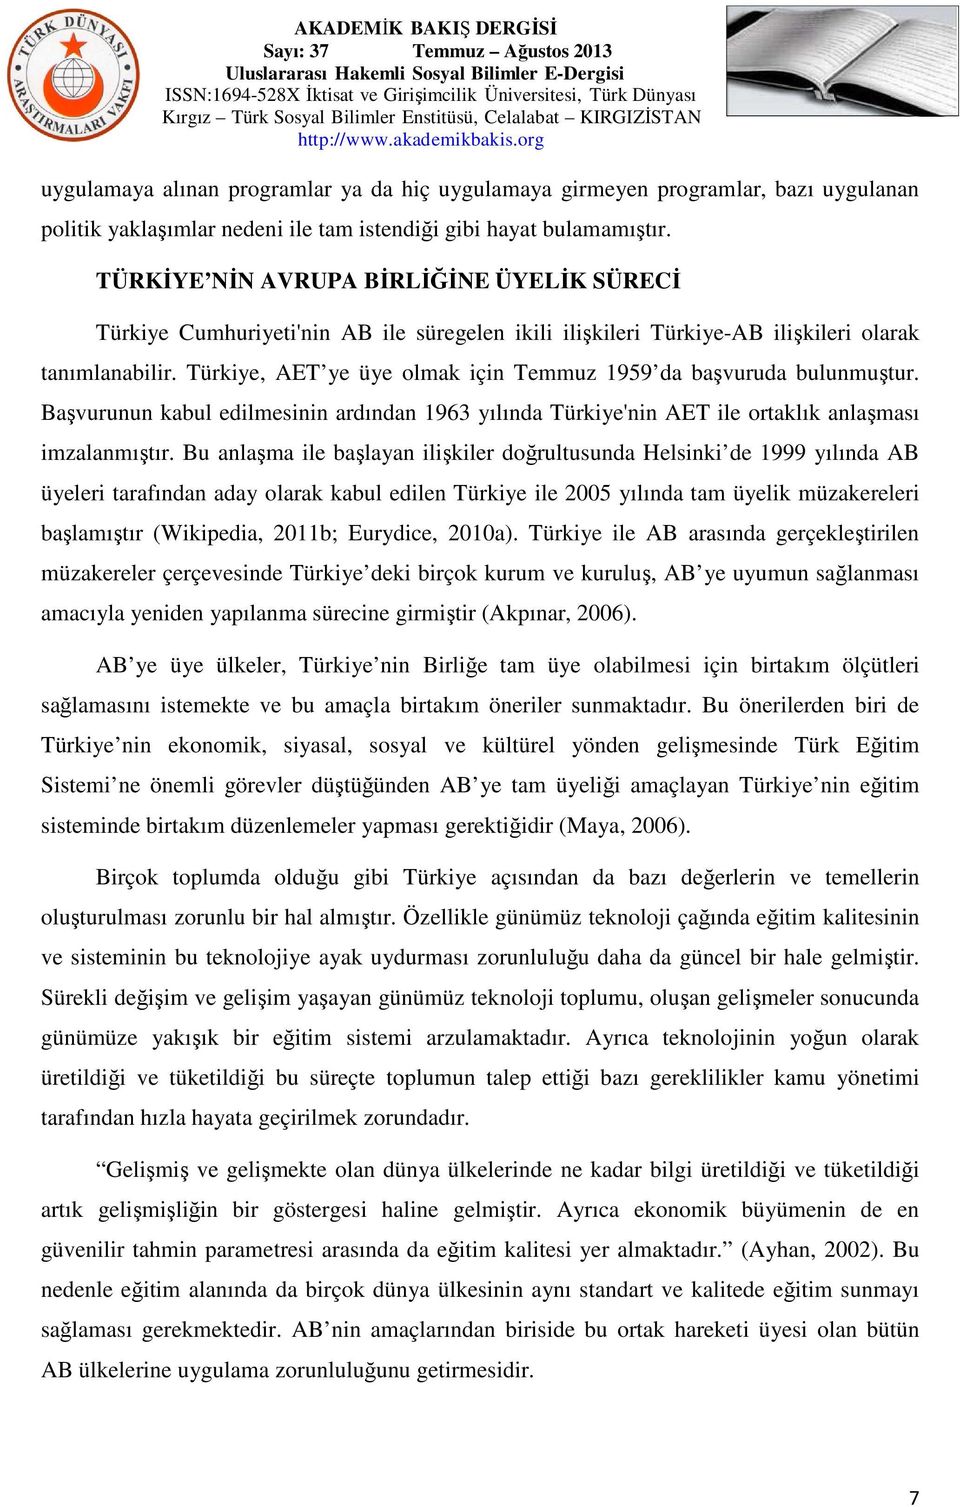 Türkiye, AET ye üye olmak için Temmuz 1959 da başvuruda bulunmuştur. Başvurunun kabul edilmesinin ardından 1963 yılında Türkiye'nin AET ile ortaklık anlaşması imzalanmıştır.